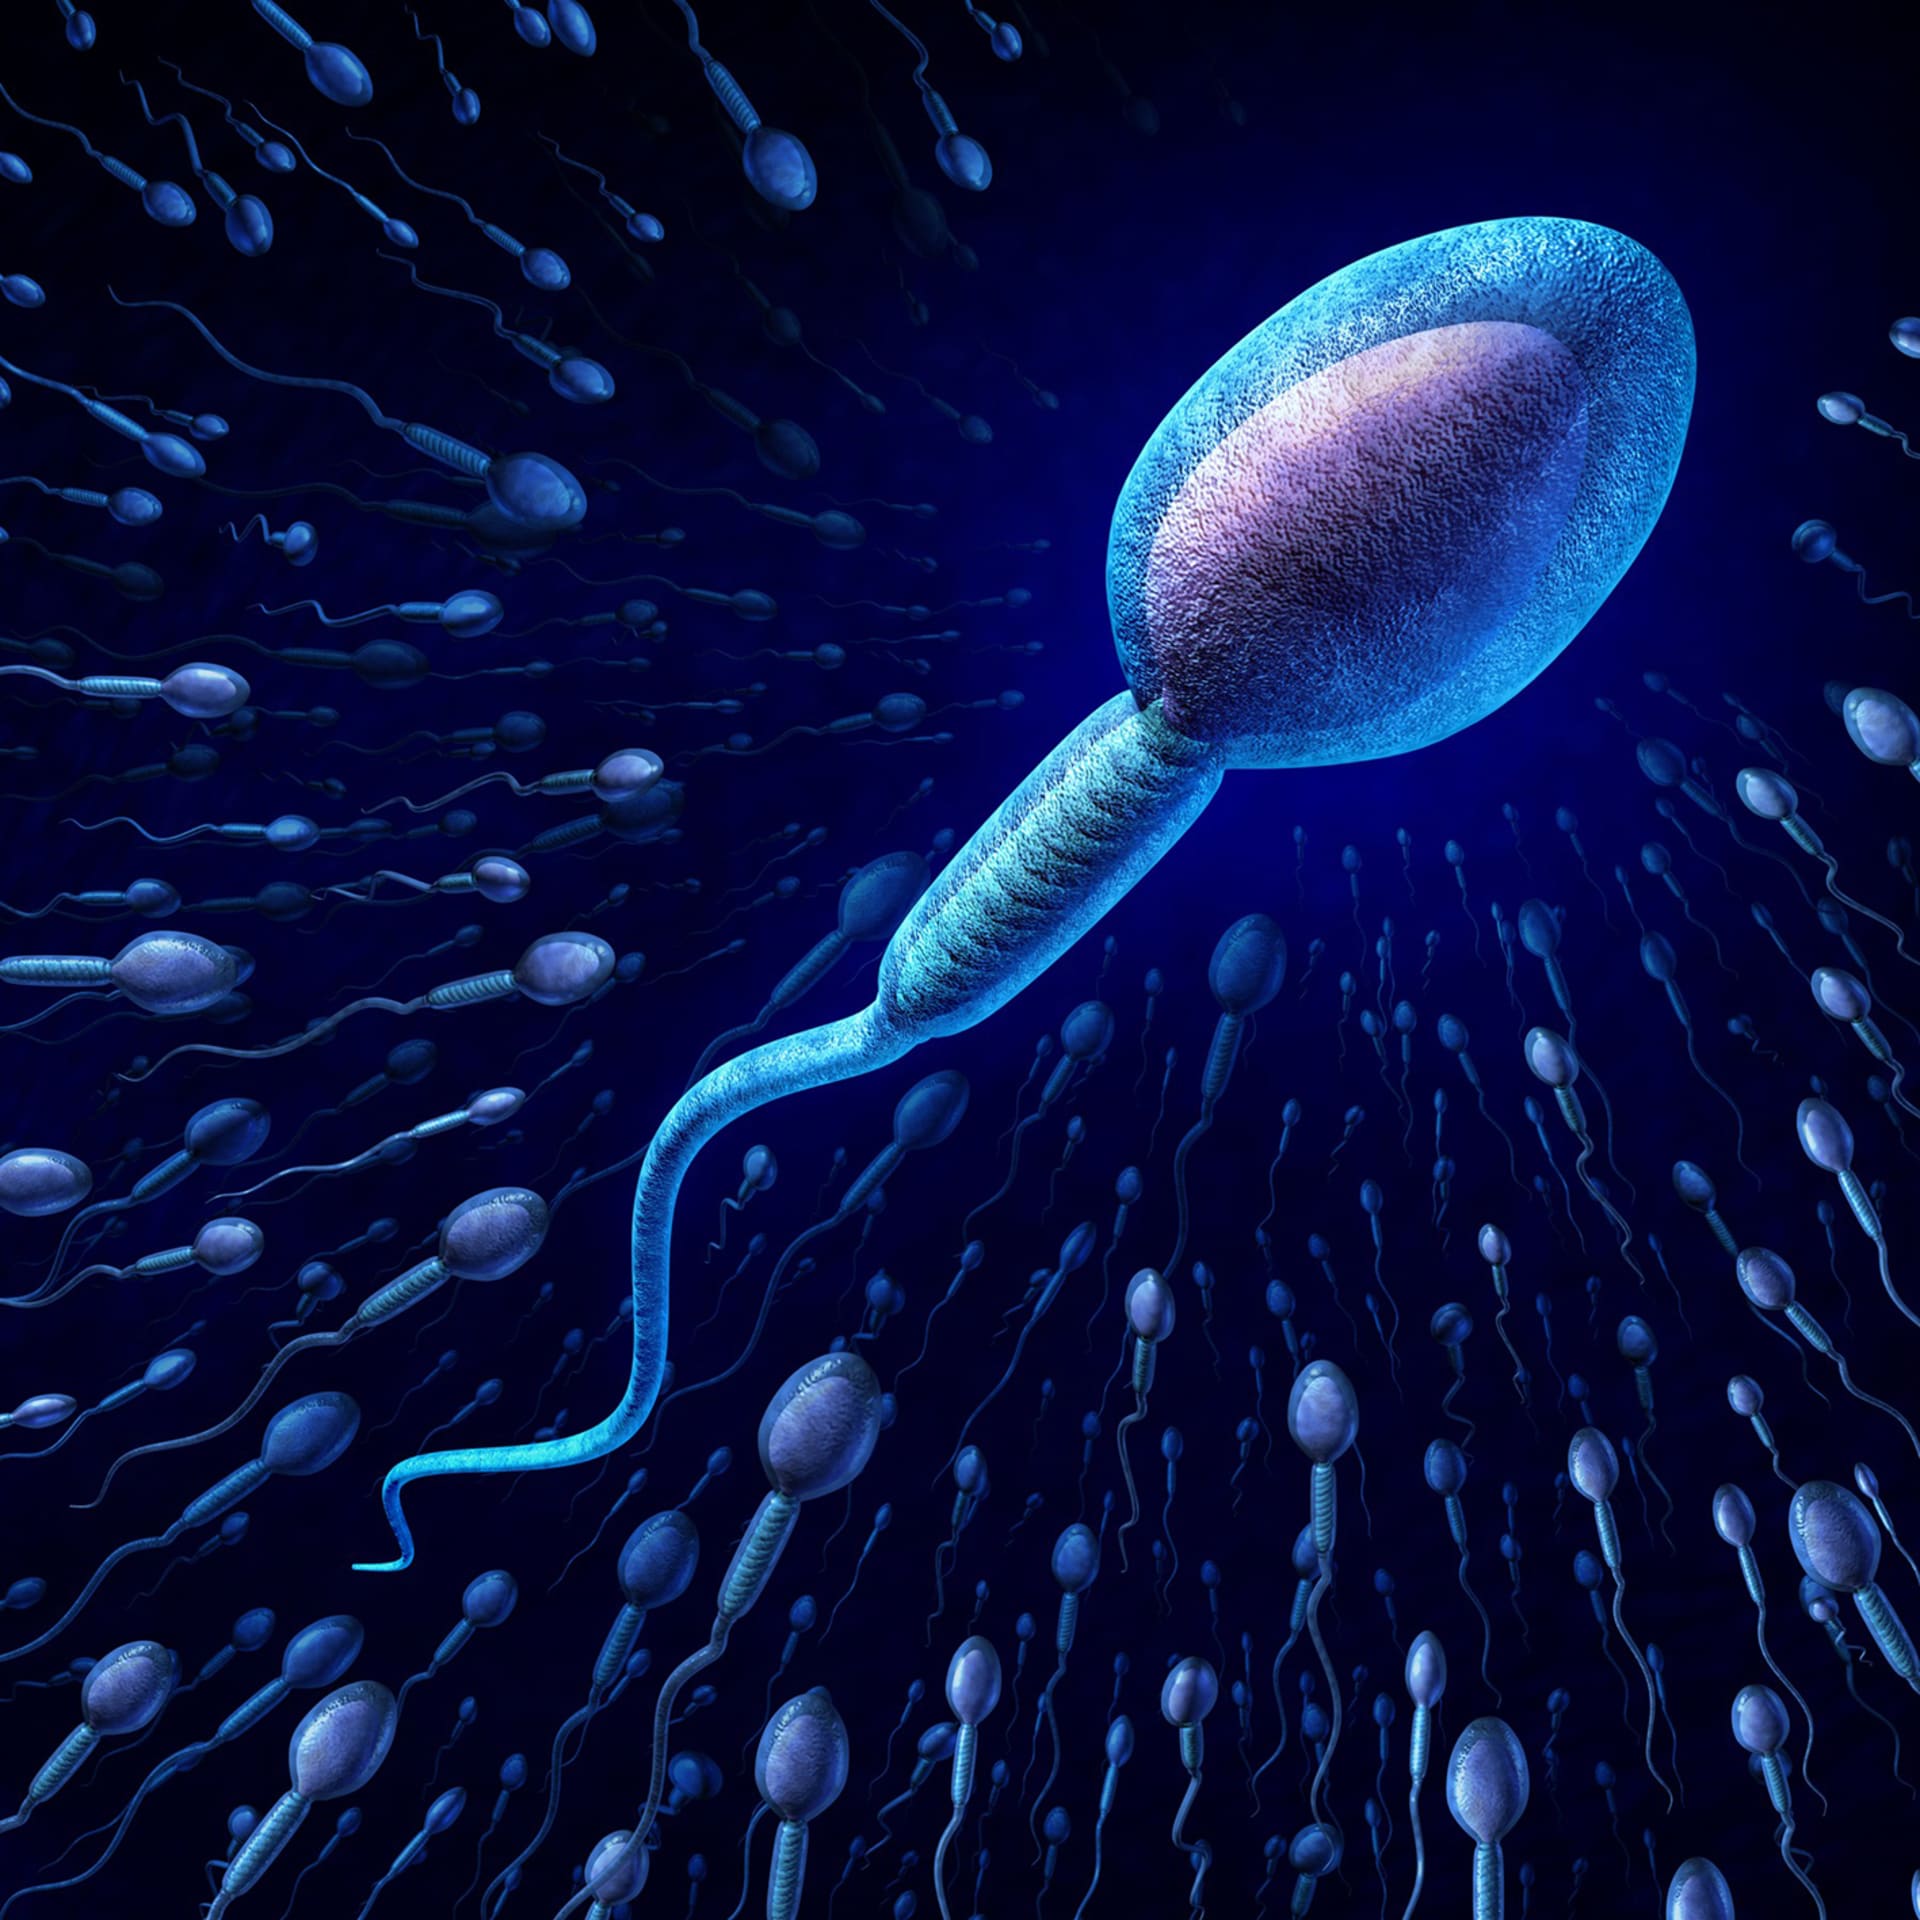 V roce 2005 reprodukční biolog univerzity v britském Sheffieldu Harry Moore prohlásil, že v silách jeho týmu je vyvinout základní zárodečnou buňku, ze které se vytvoří spermie či vajíčko.